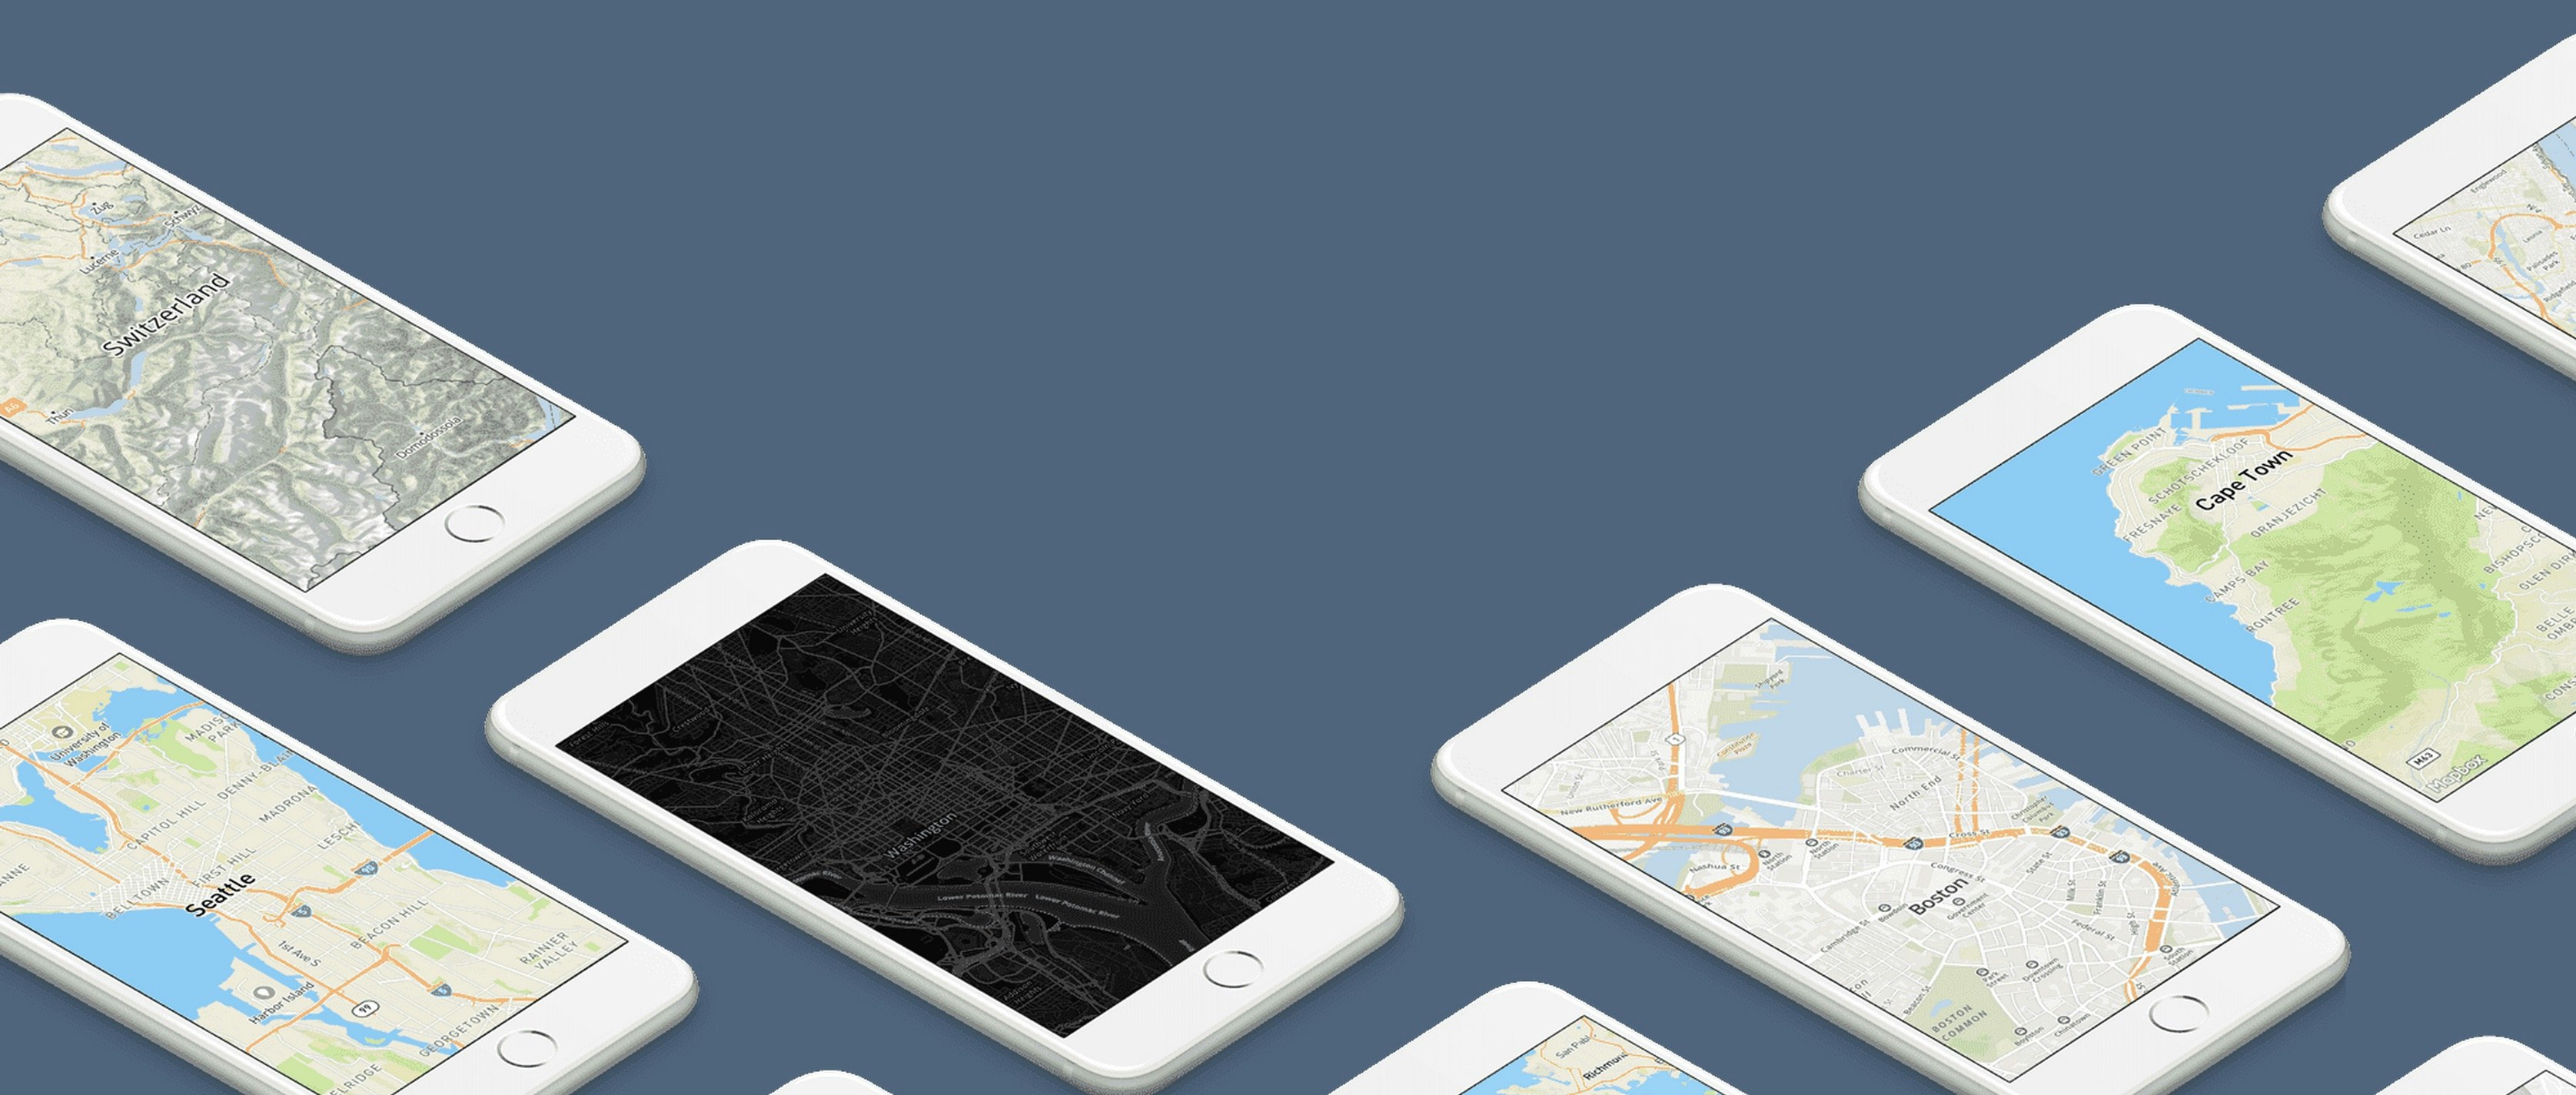 Mapbox GL for iOS